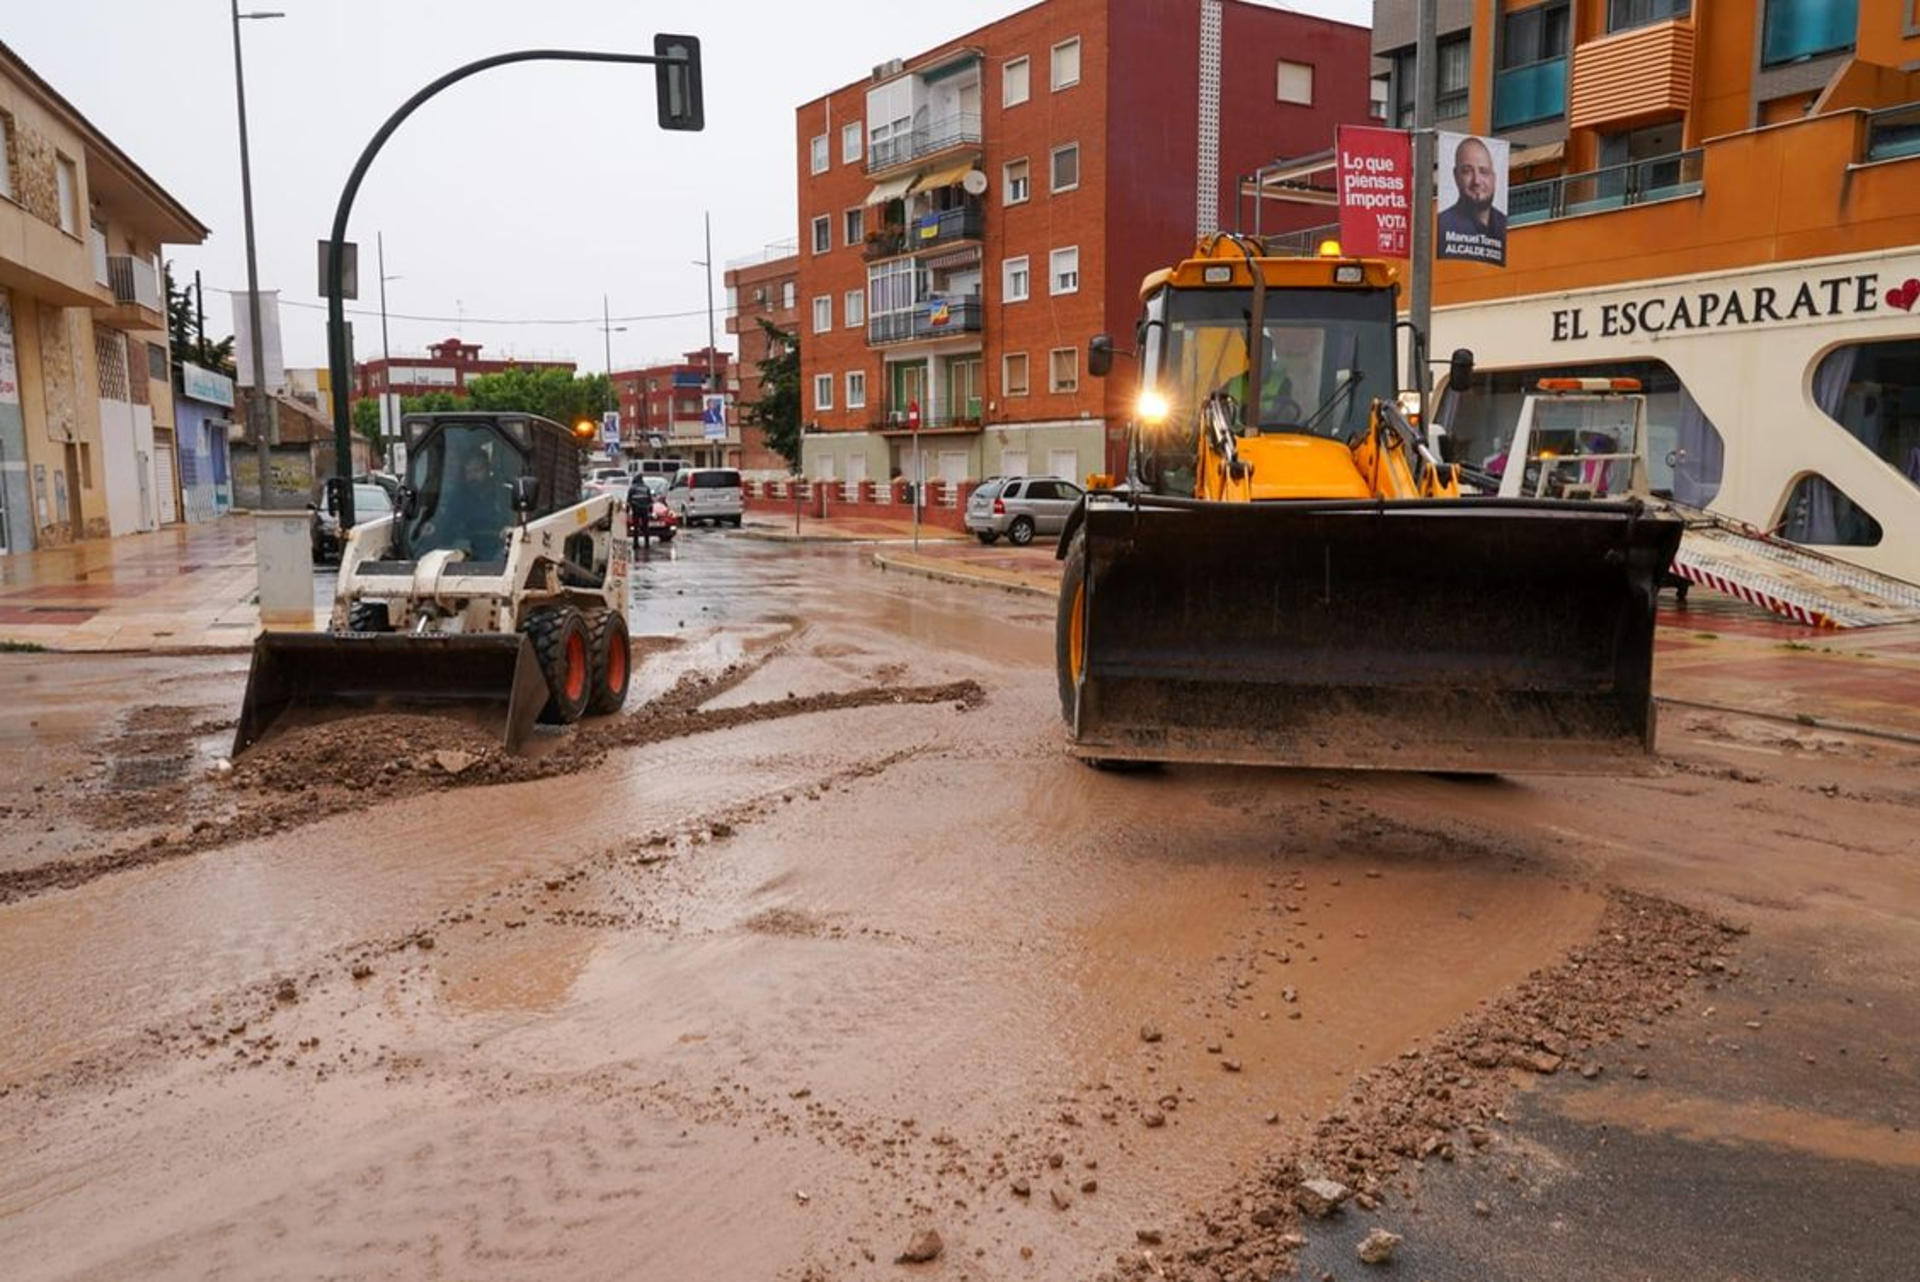 Precipitaciones de más de 100 litros provocan una decena de intervenciones, inundaciones y cortes de carretera en Cartagena. EFE/ Ayuntamiento Cartagena SOLO USO EDITORIAL/SOLO DISPONIBLE PARA ILUSTRAR LA NOTICIA QUE ACOMPAÑA (CRÉDITO OBLIGATORIO)
